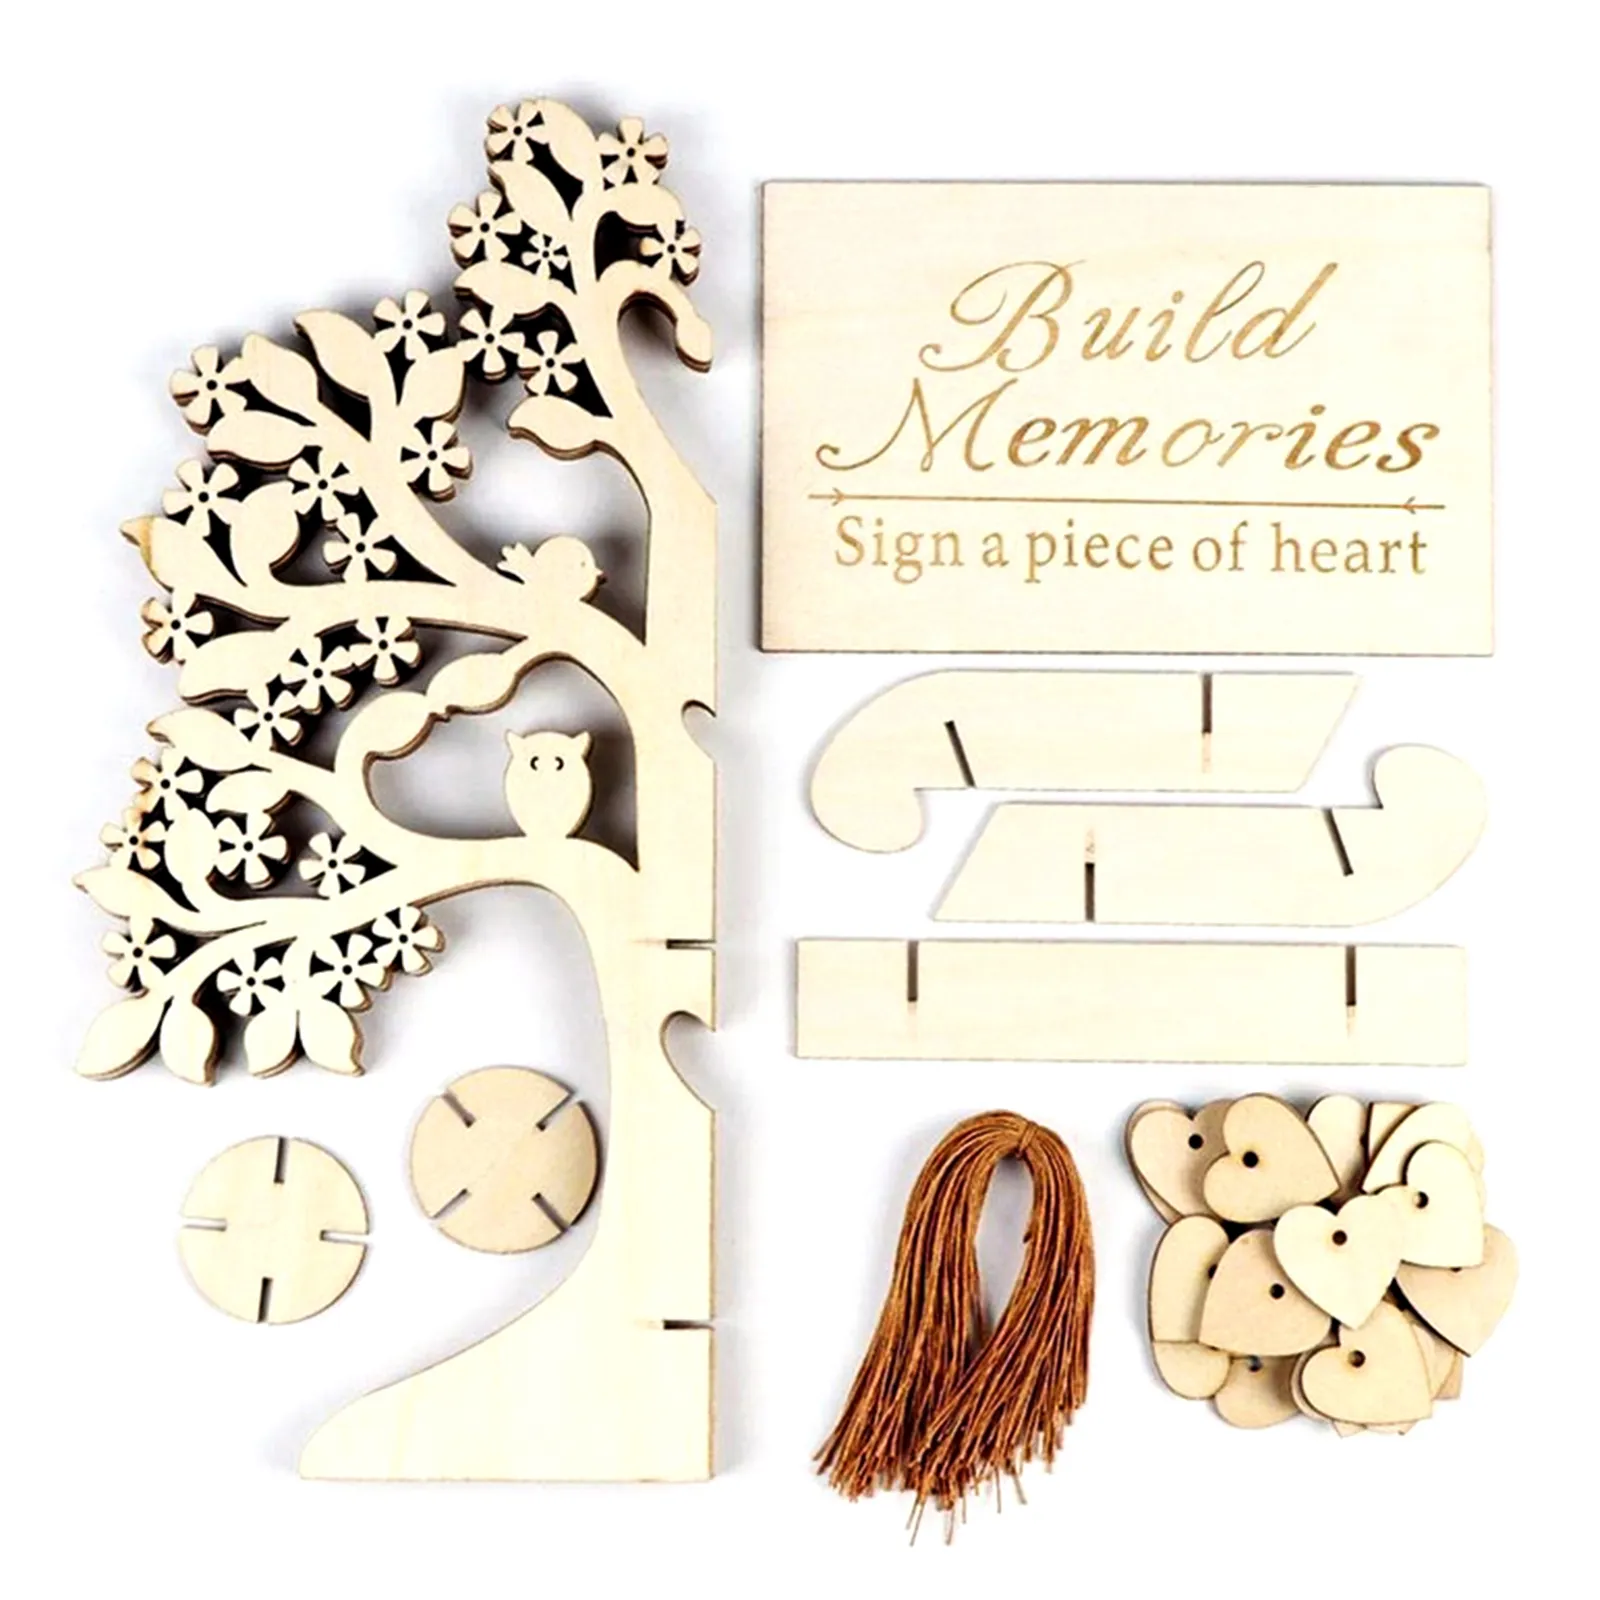 Livro de convidados de casamento rústico Convidado Visite Signature Tree Convidando Livro de Wooden Hearts Ornamentos